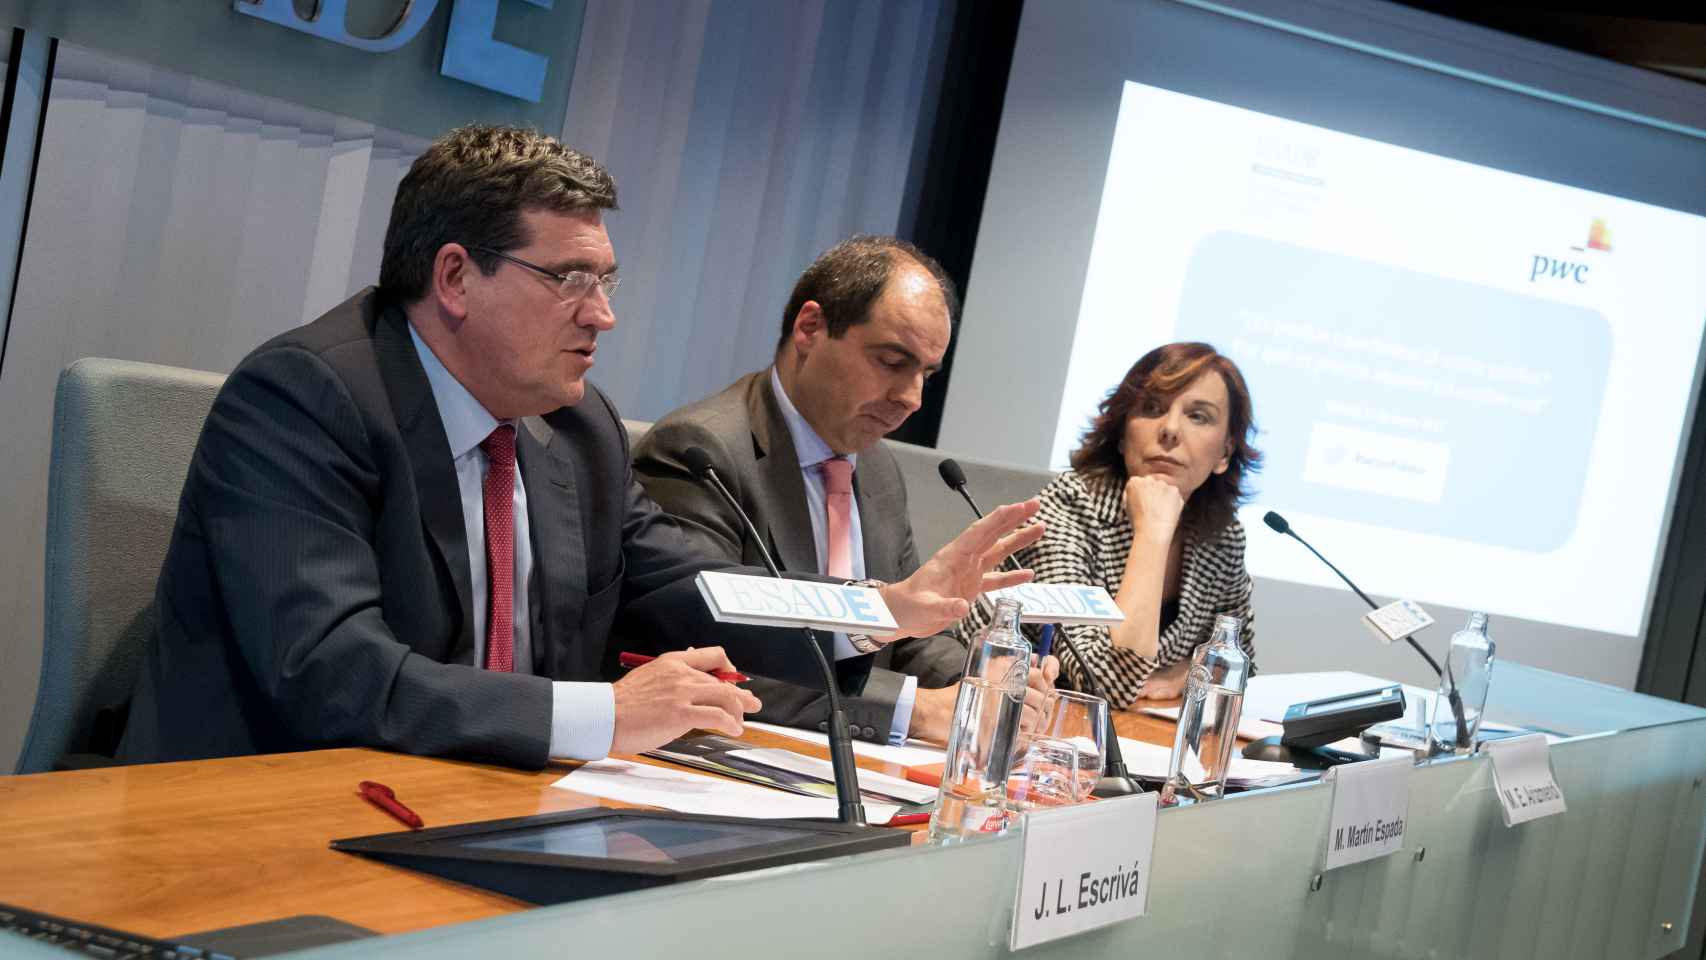 Martín Espada, socio de PwC, junto a Esther Arizmendi, del CTBG, y José Luis Escrivá, de la AIREF